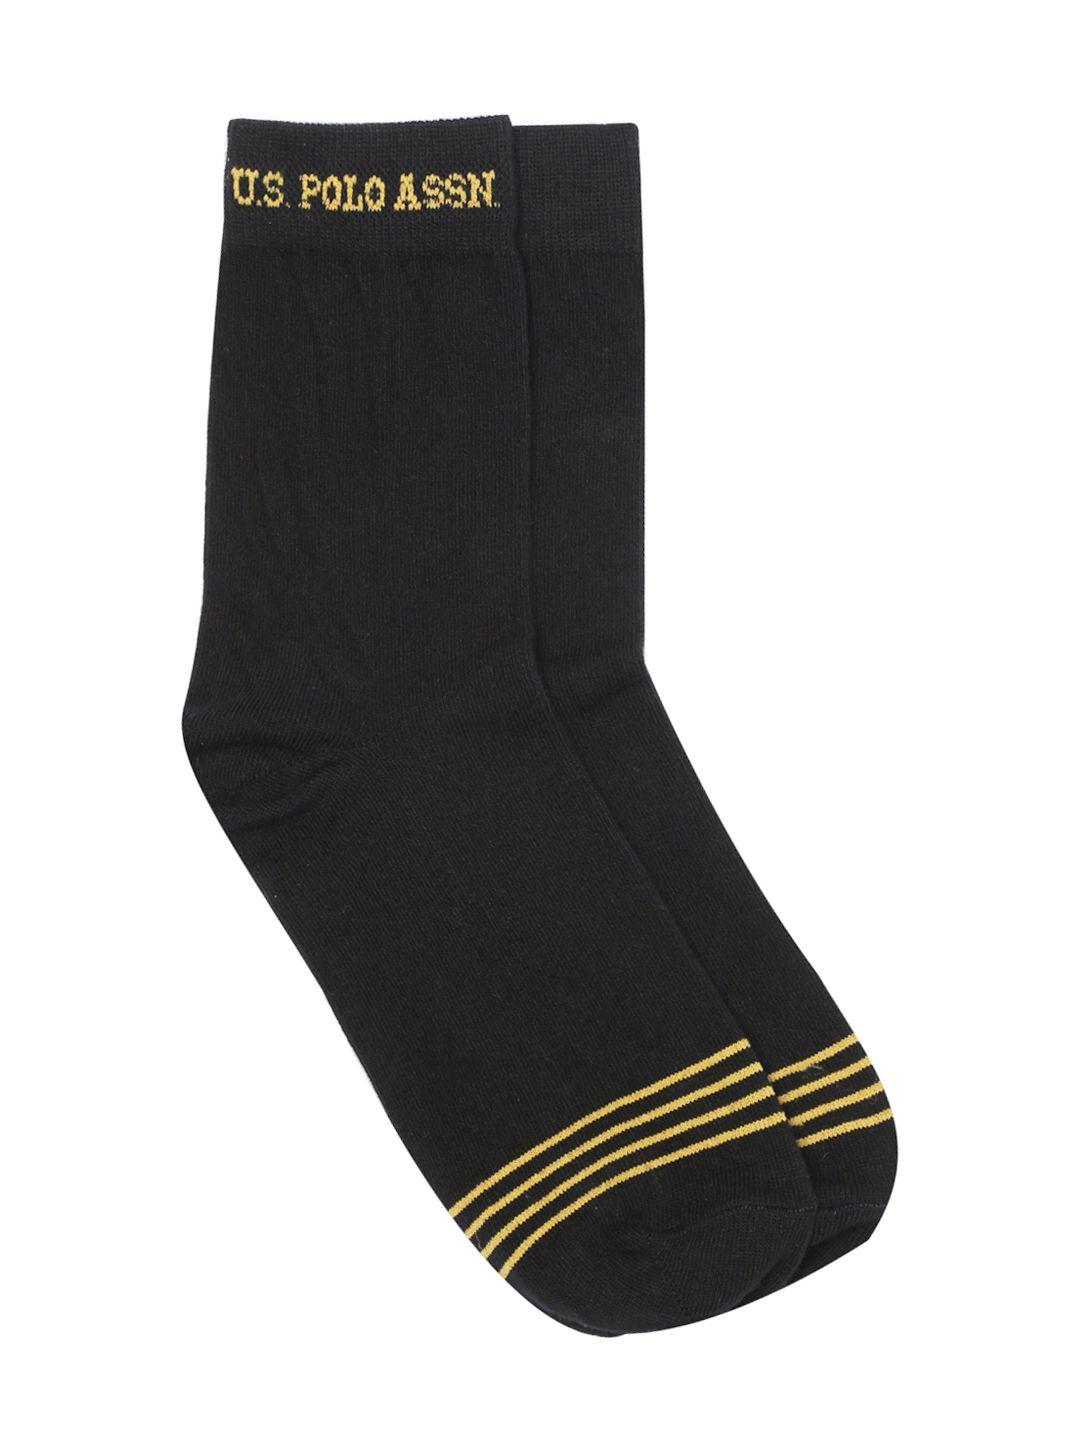 u.s.-polo-assn.-men-black-patterned-calf-length-socks